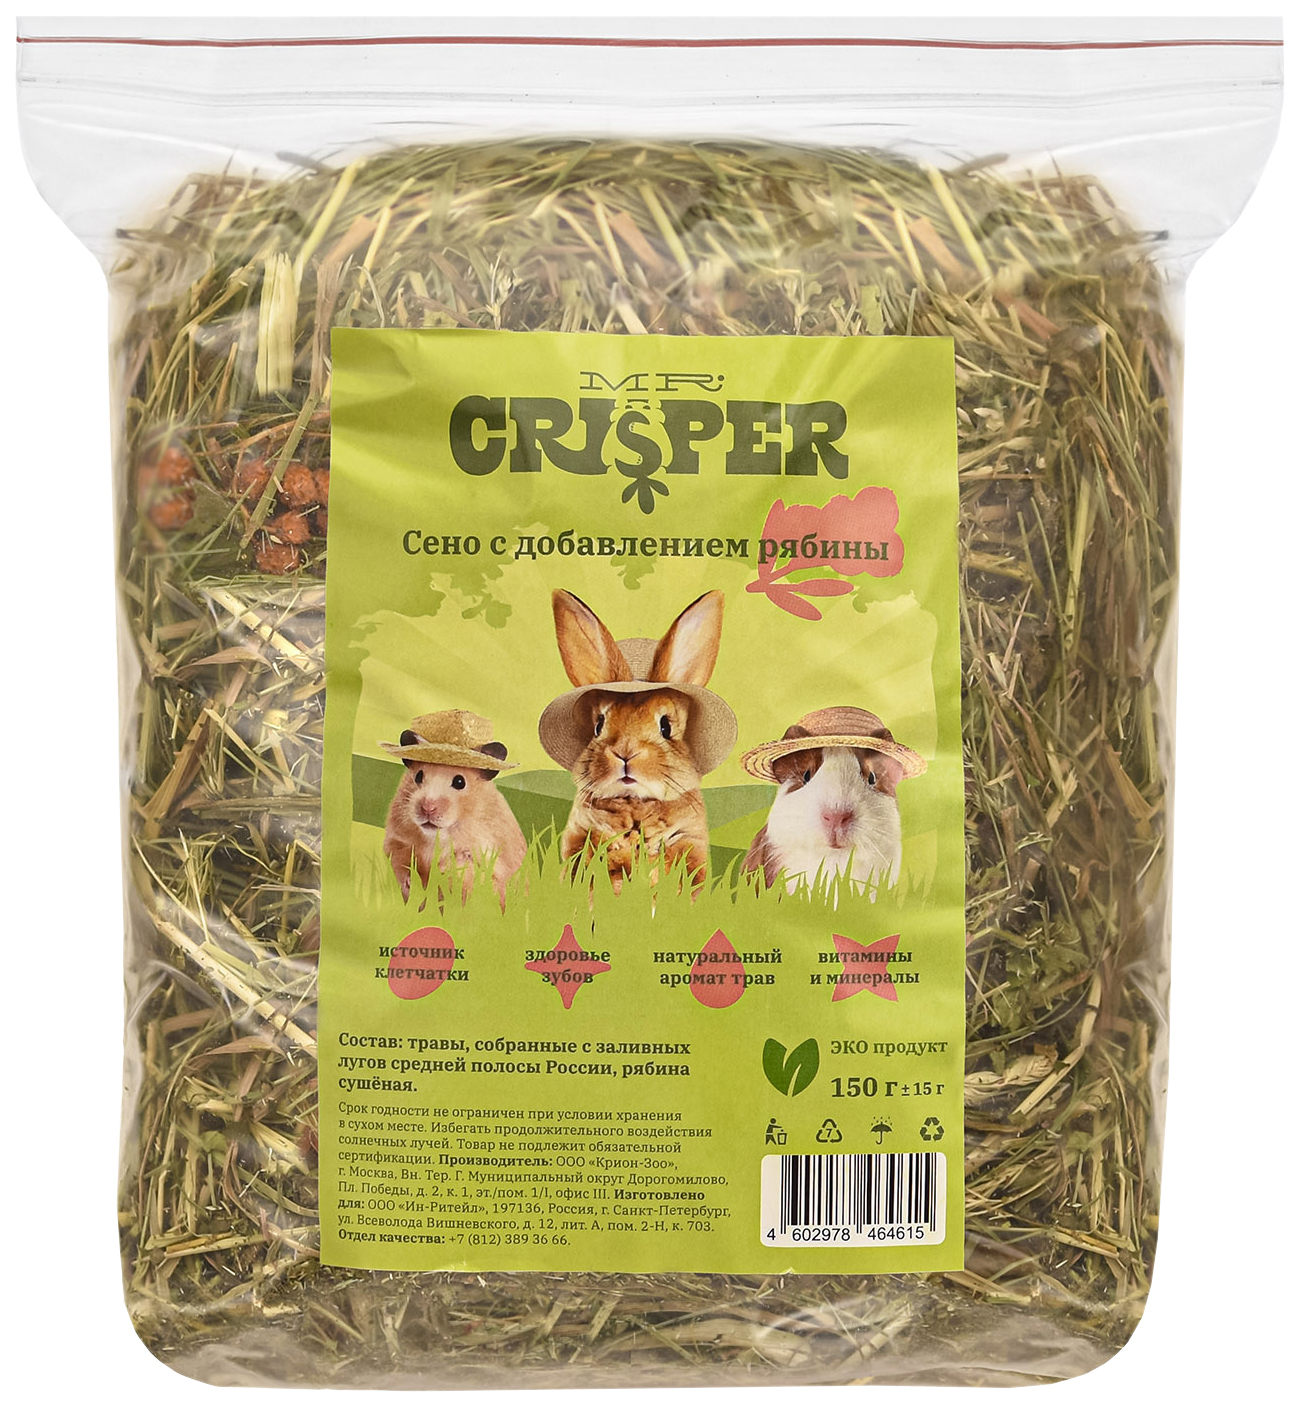 Сухой корм для грызунов Mr.Crisper, сено с добавлением рябины, 150 г